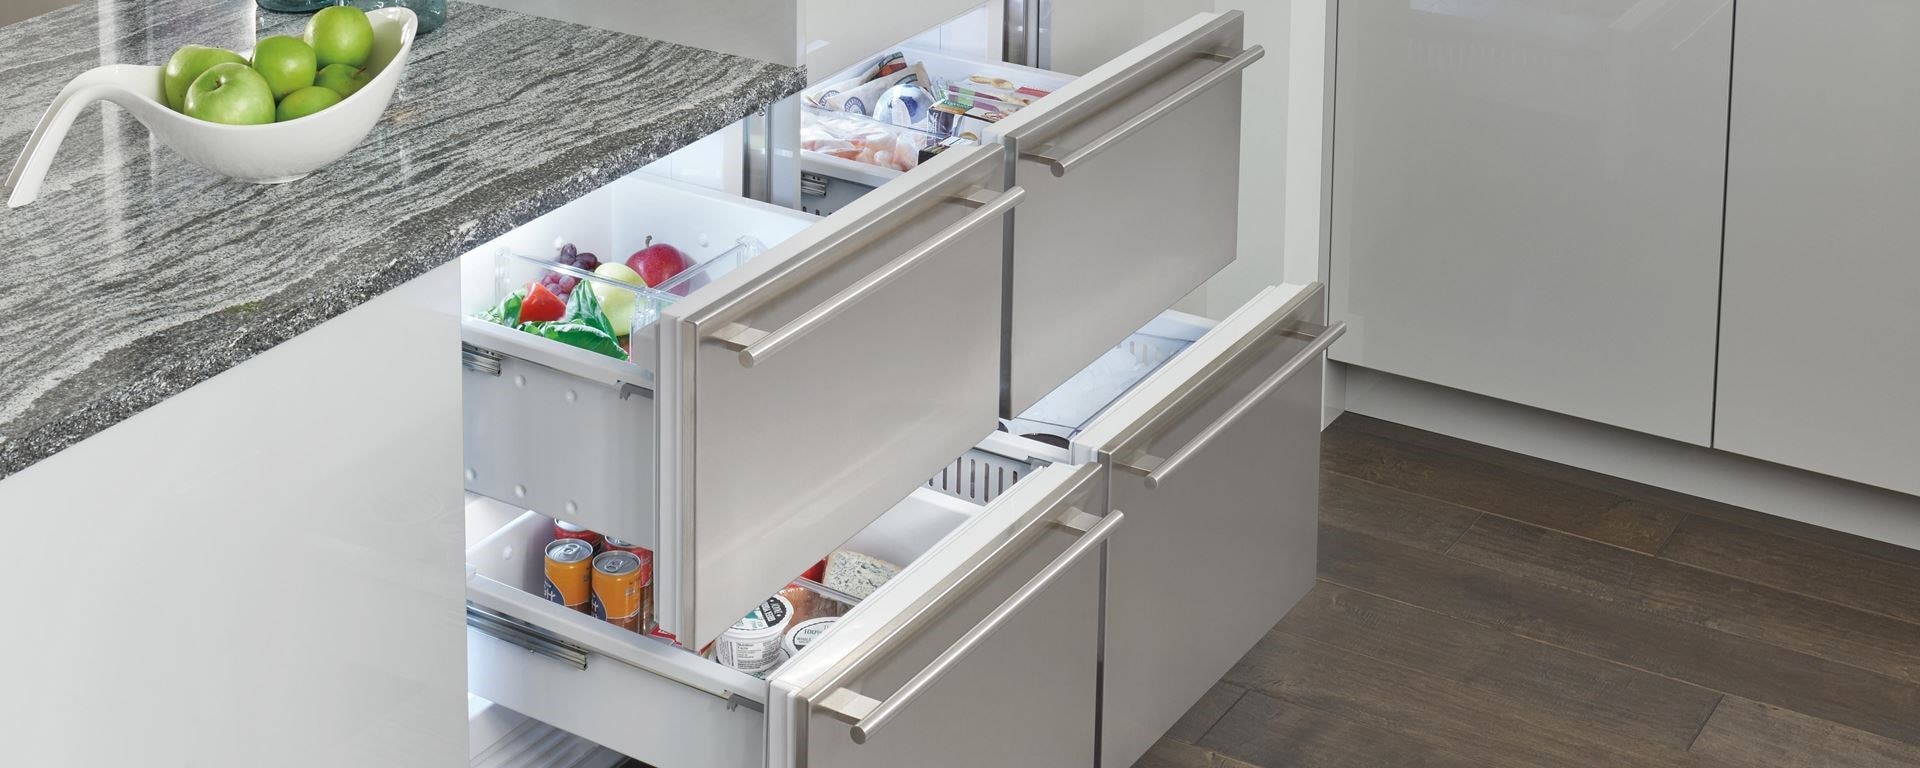 Cajones de refrigerador Sub-Zero y cajones de congelador con paneles personalizados